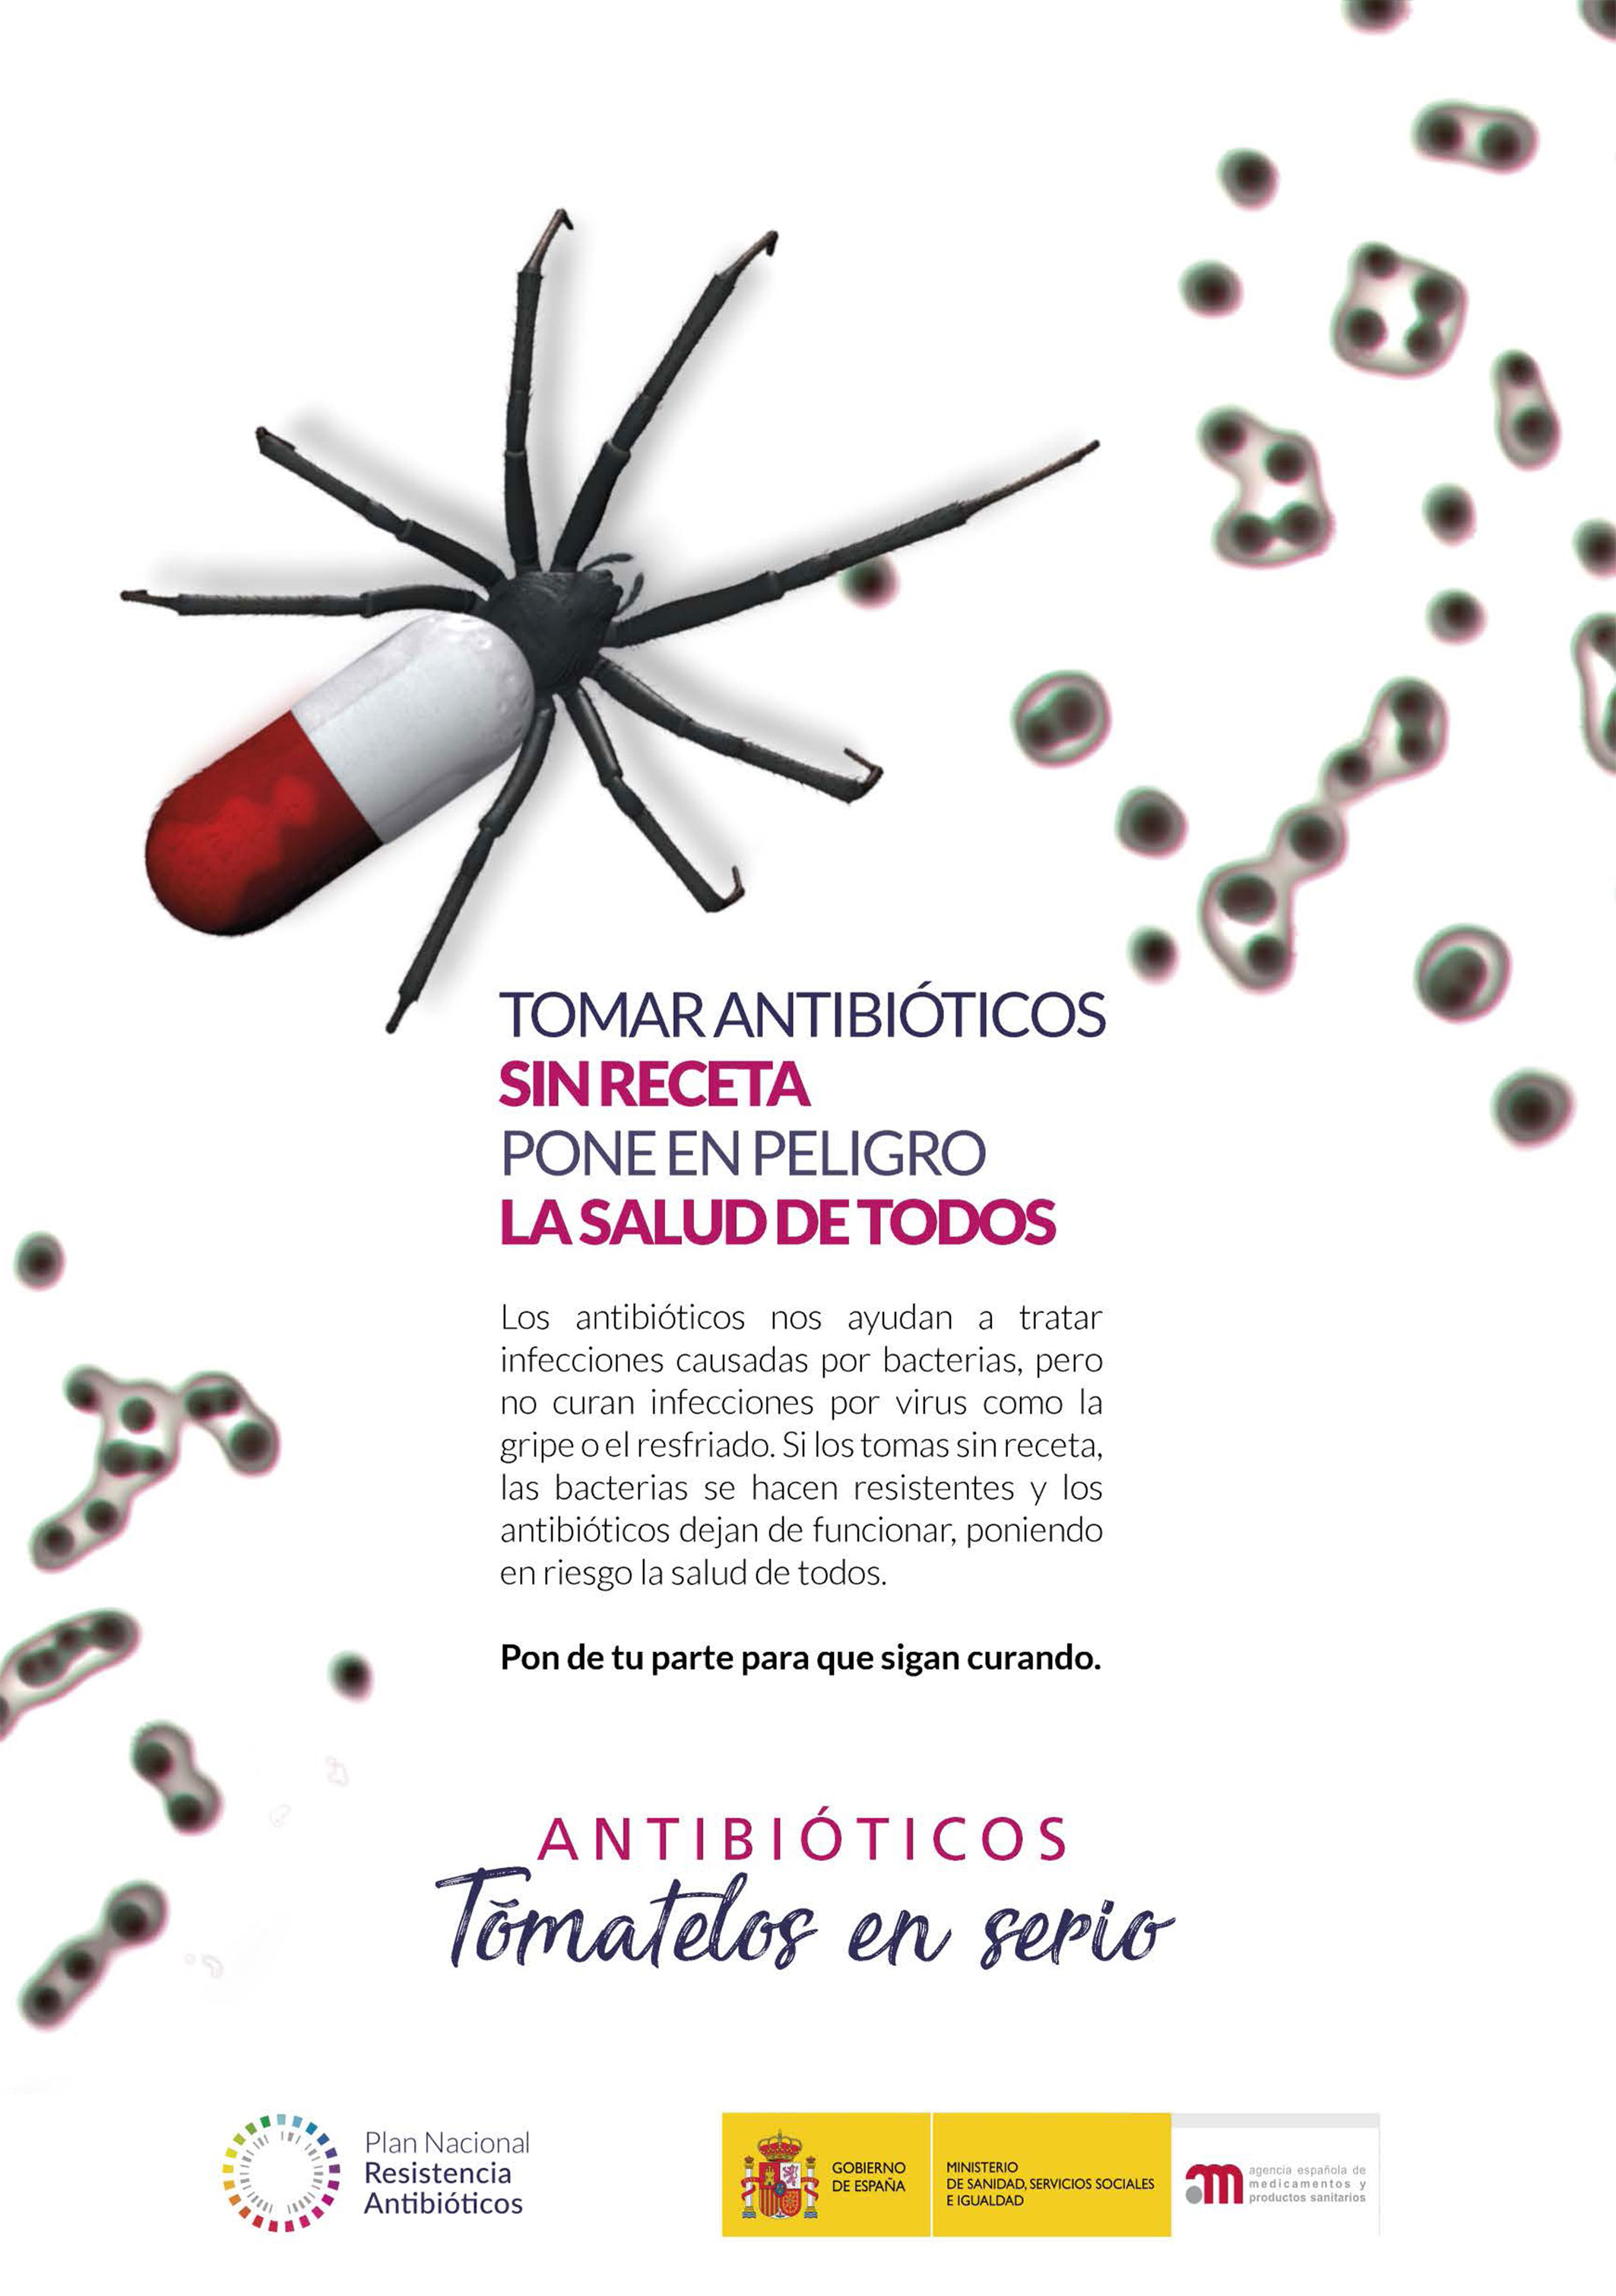 Permanecer Tranvía rueda Salud recuerda la necesidad de tomar antibiótico solo bajo prescripción  médica y de modo racional